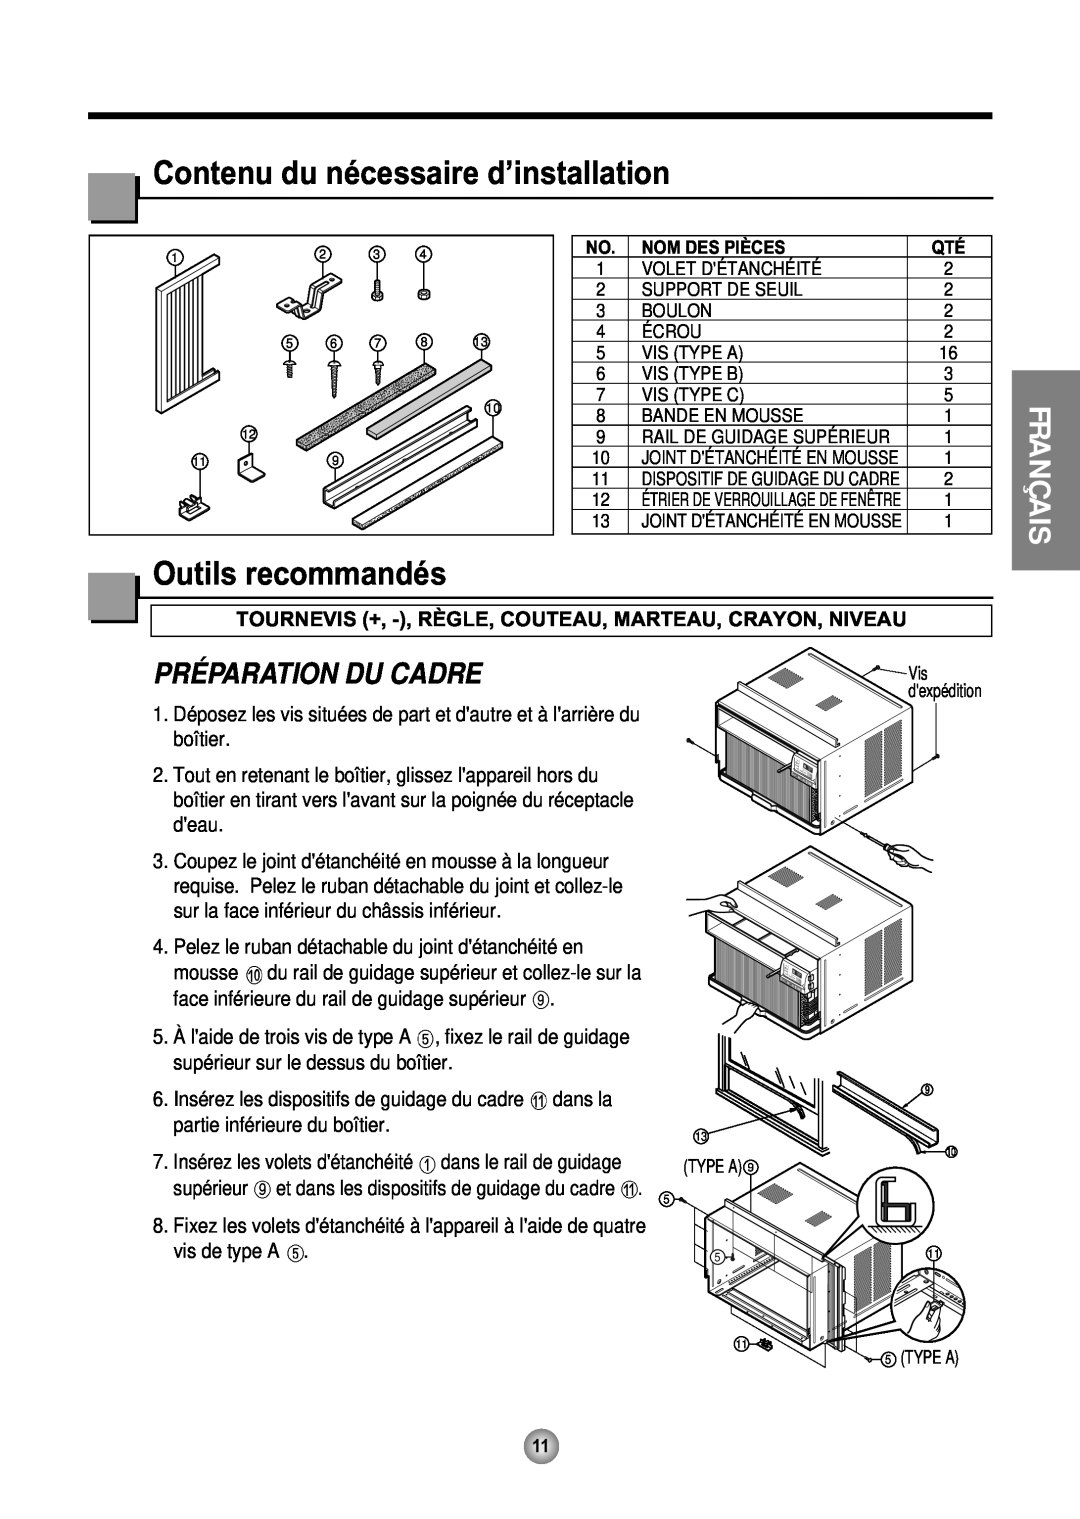 Friedrich CP08 operation manual Contenu du nécessaire d’installation, Outils recommandés, Préparation Du Cadre, Français 